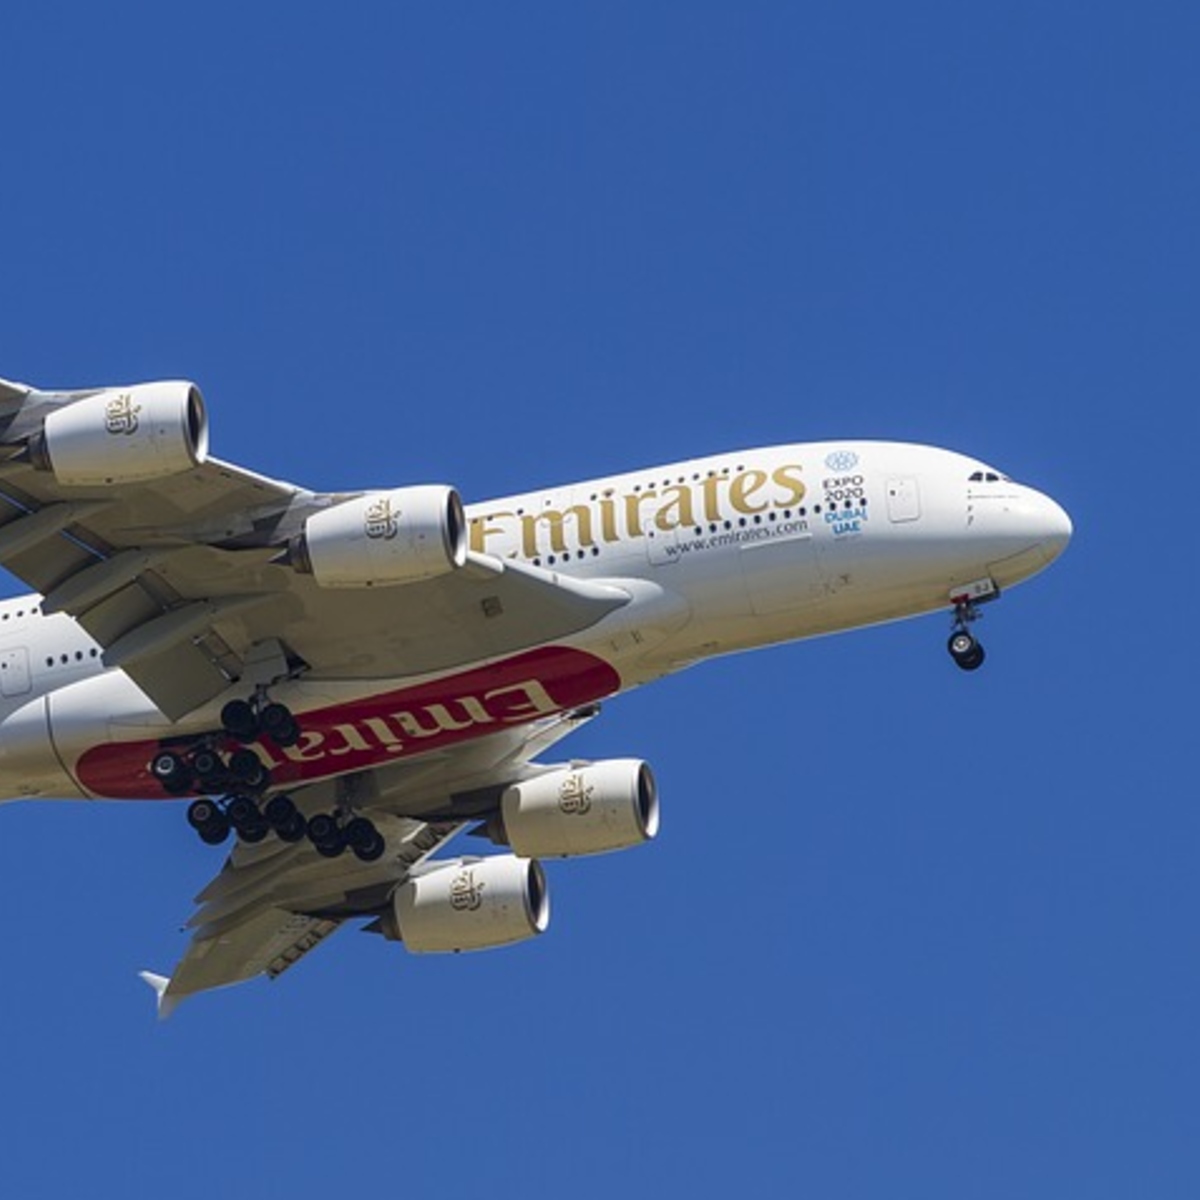 Aérien : la compagnie Emirates va recevoir le soutien de Dubaï, et dans les autres pays ?